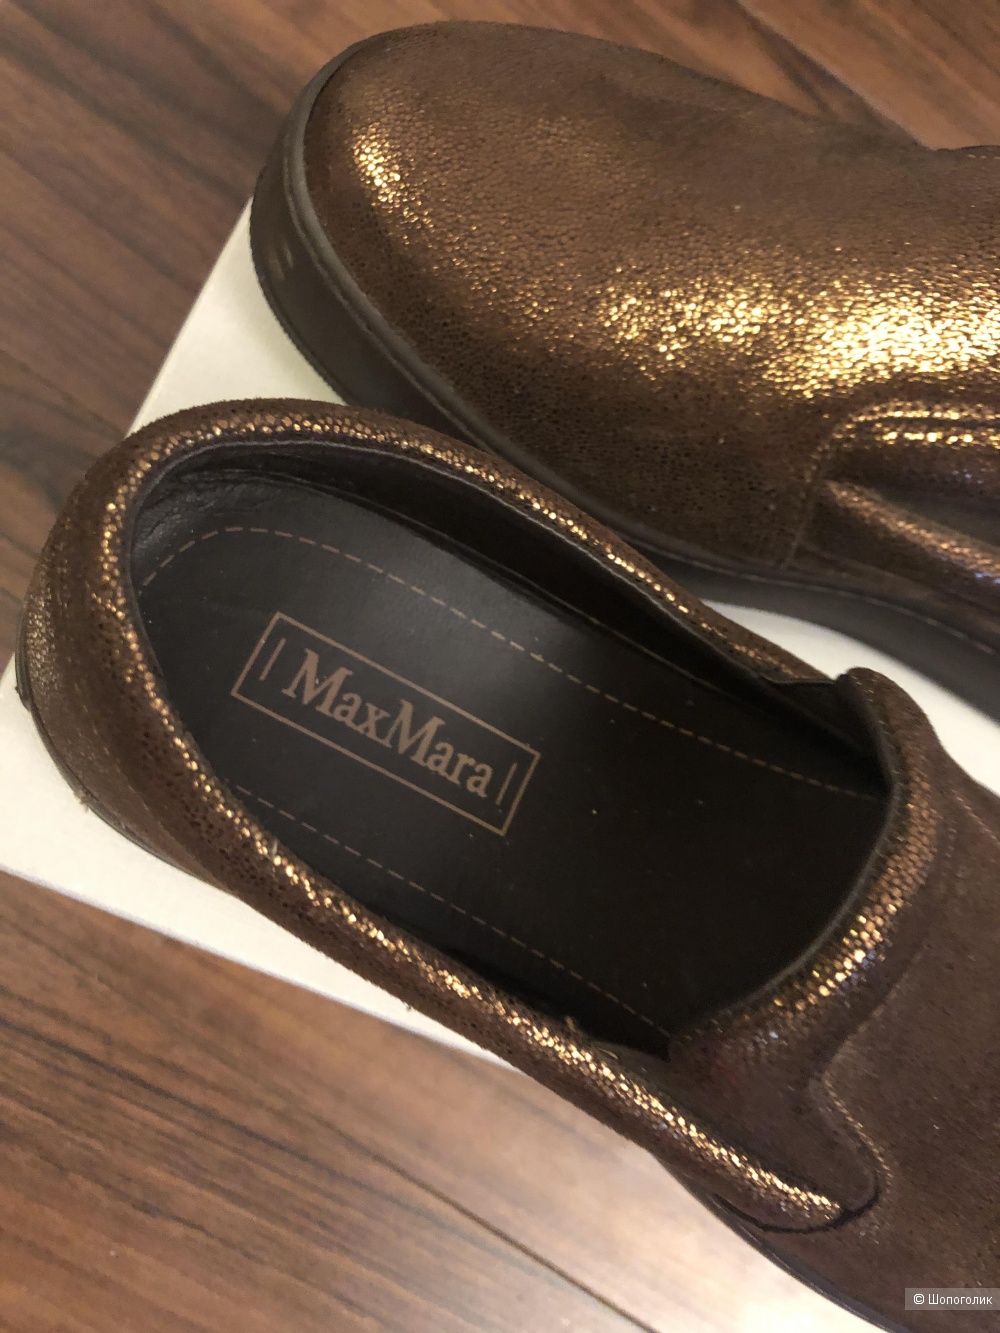 Ботинки Max Mara, размер 37